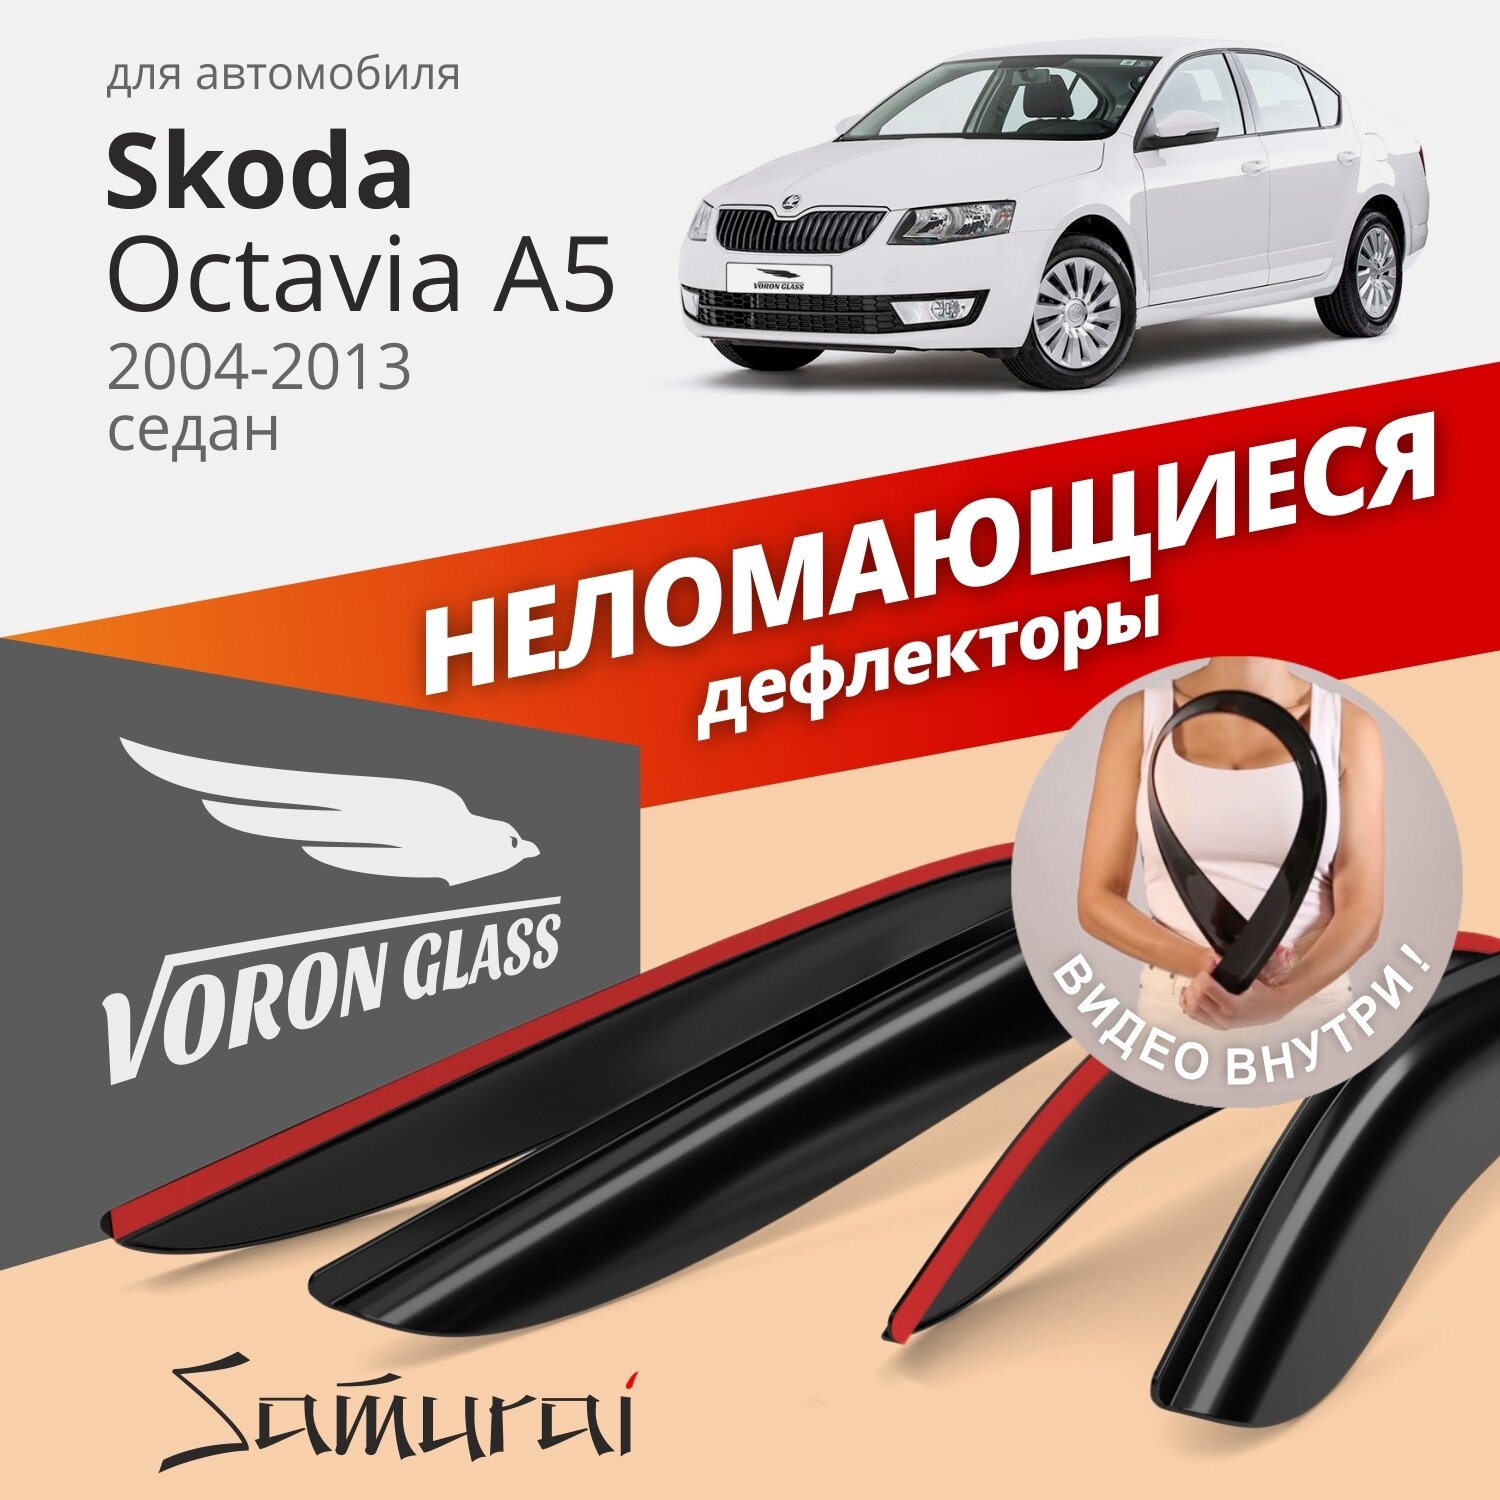 Дефлекторы окон неломающиеся Voron Glass серия Samurai для Skoda Octavia A5 2004-2013 седан накладные 4 шт.